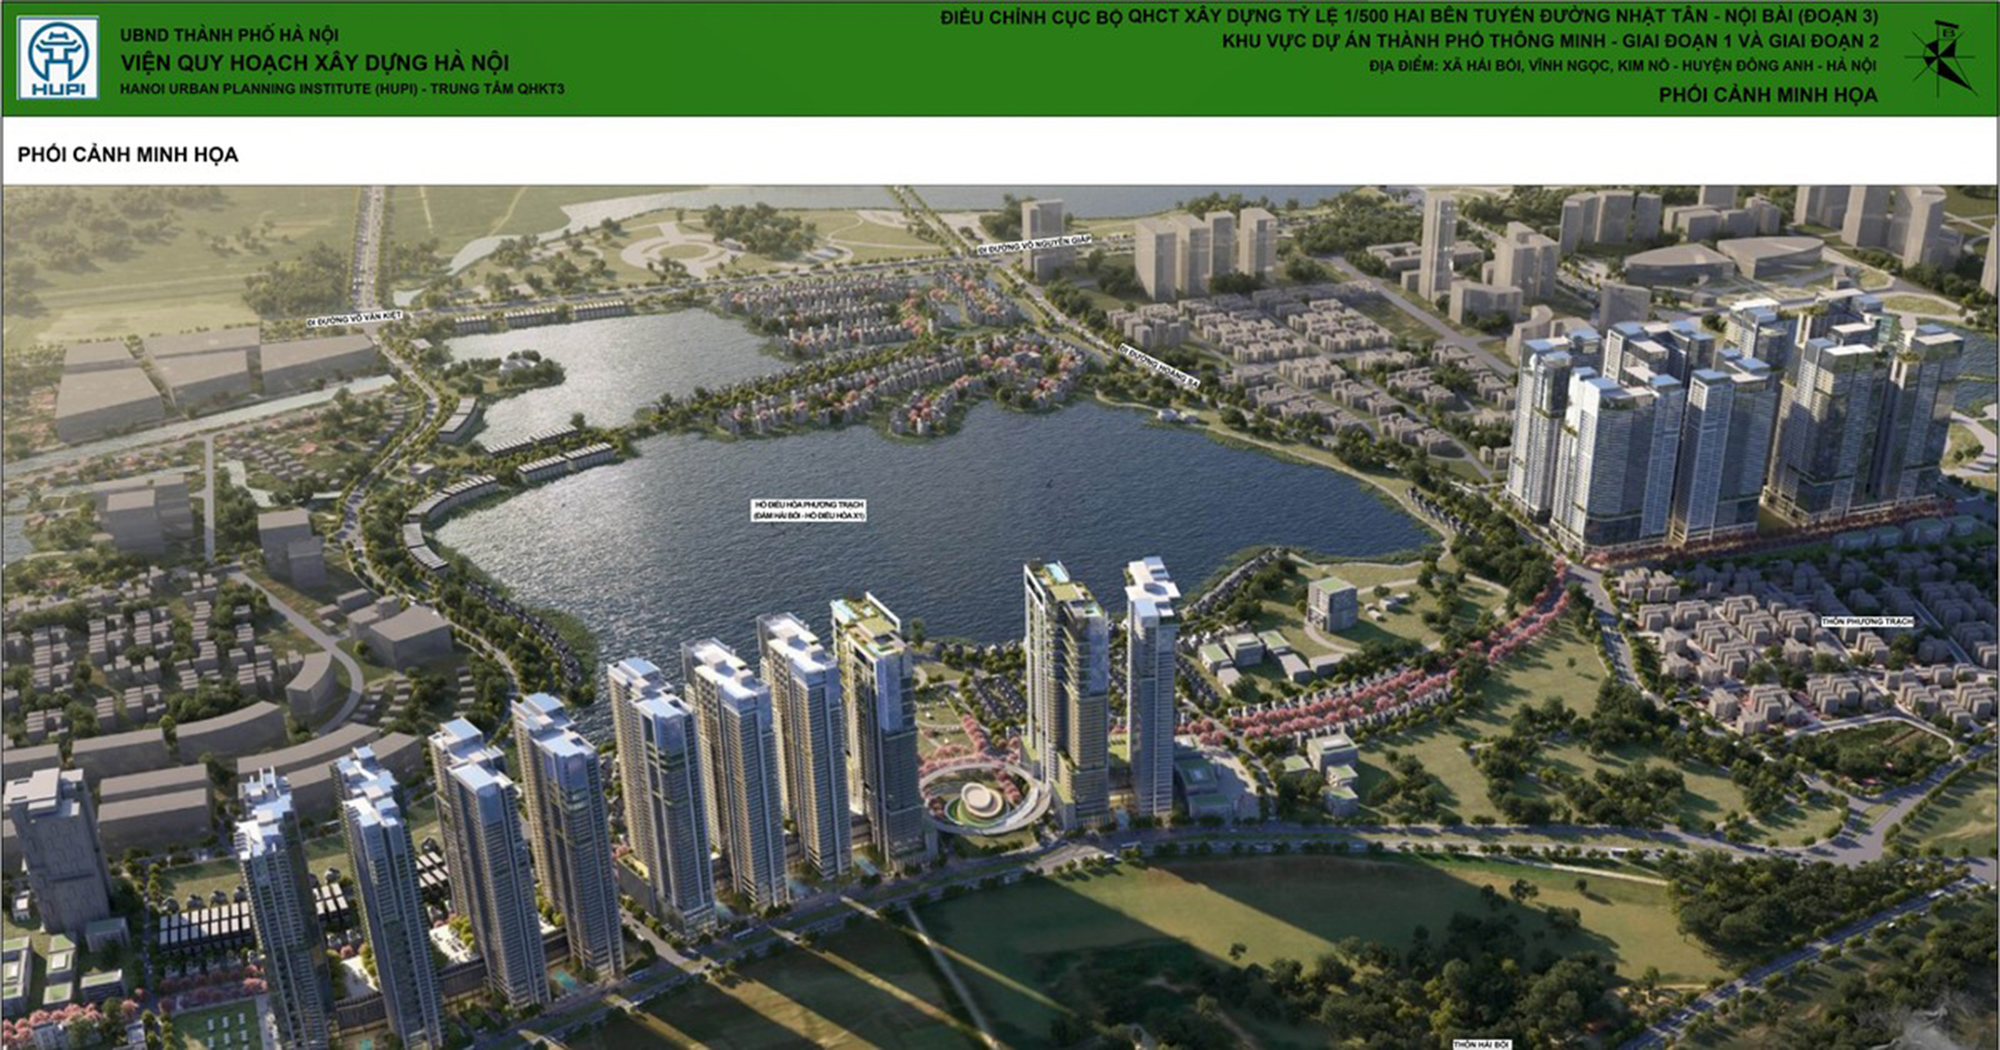 2 phút xem hết những dự án khủng của huyện sắp lên quận tại Hà Nội: 3 cầu vượt sông Hồng, thành phố thông minh 4 tỷ USD, đại dự án 35.000 tỷ của Vinhomes- Ảnh 4.